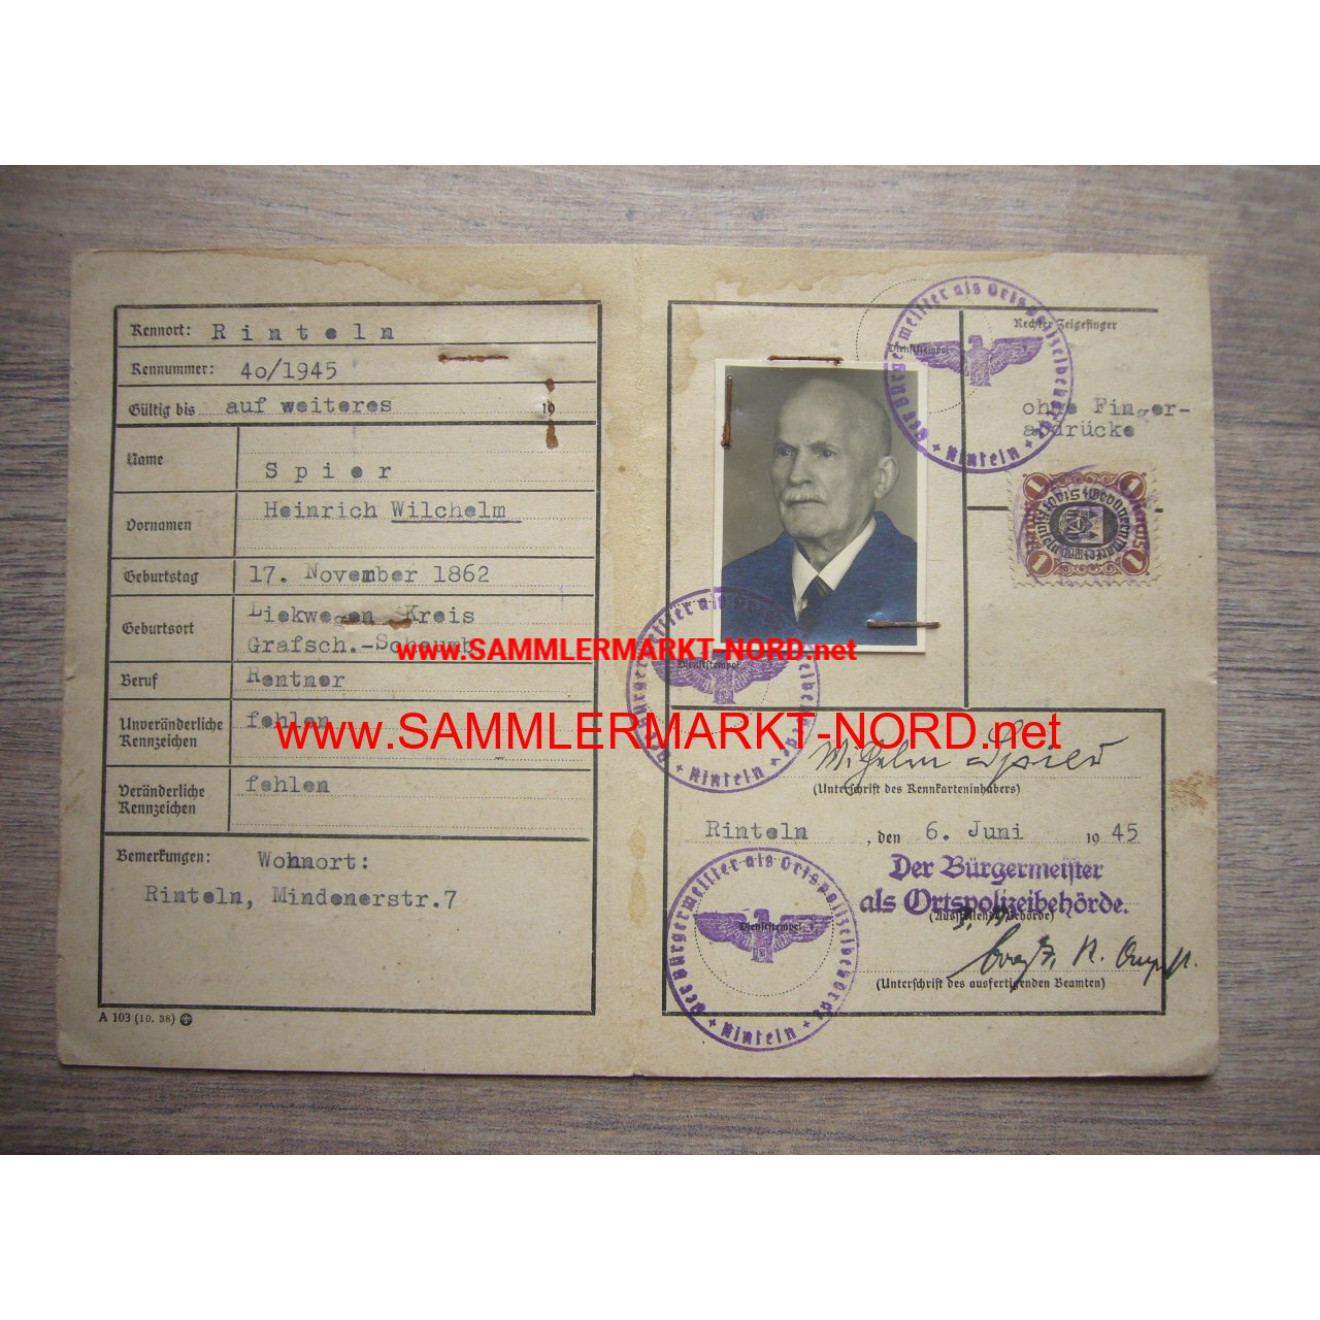 Emergency ID - Rinteln (Weser) June 6, 1945